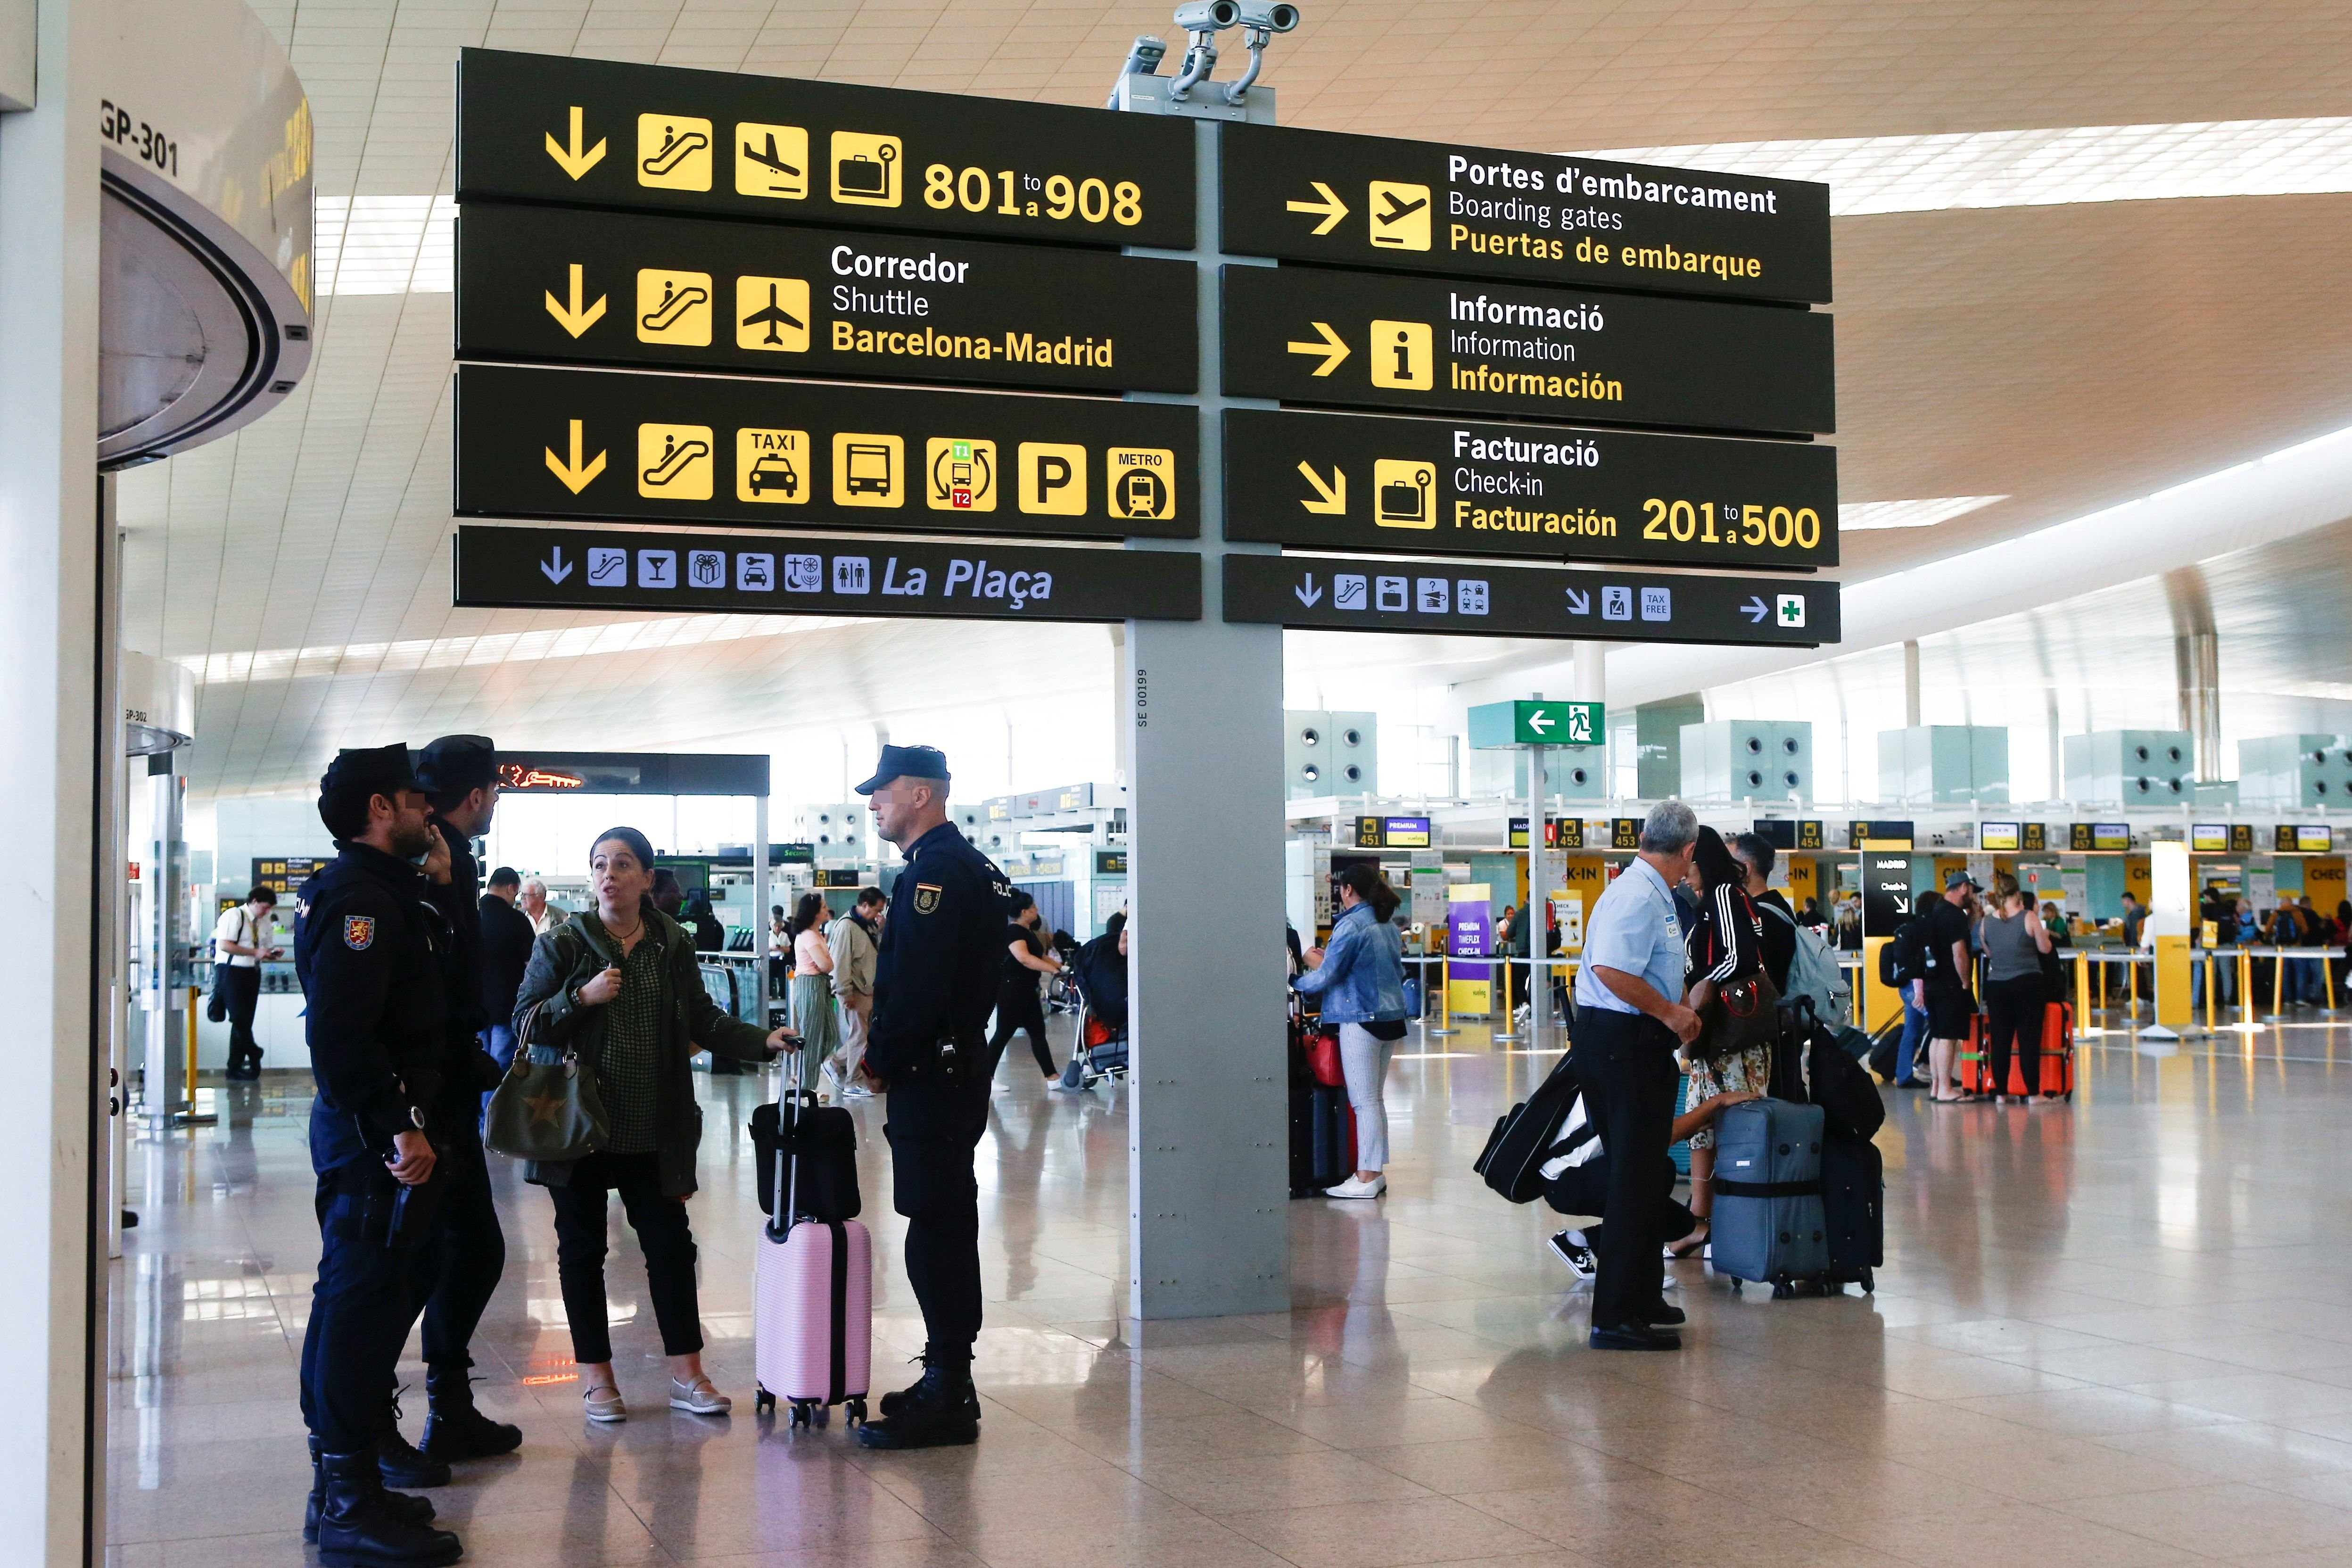 Los pasajeros del aeropuerto del Prat caen un 20% por el coronavirus